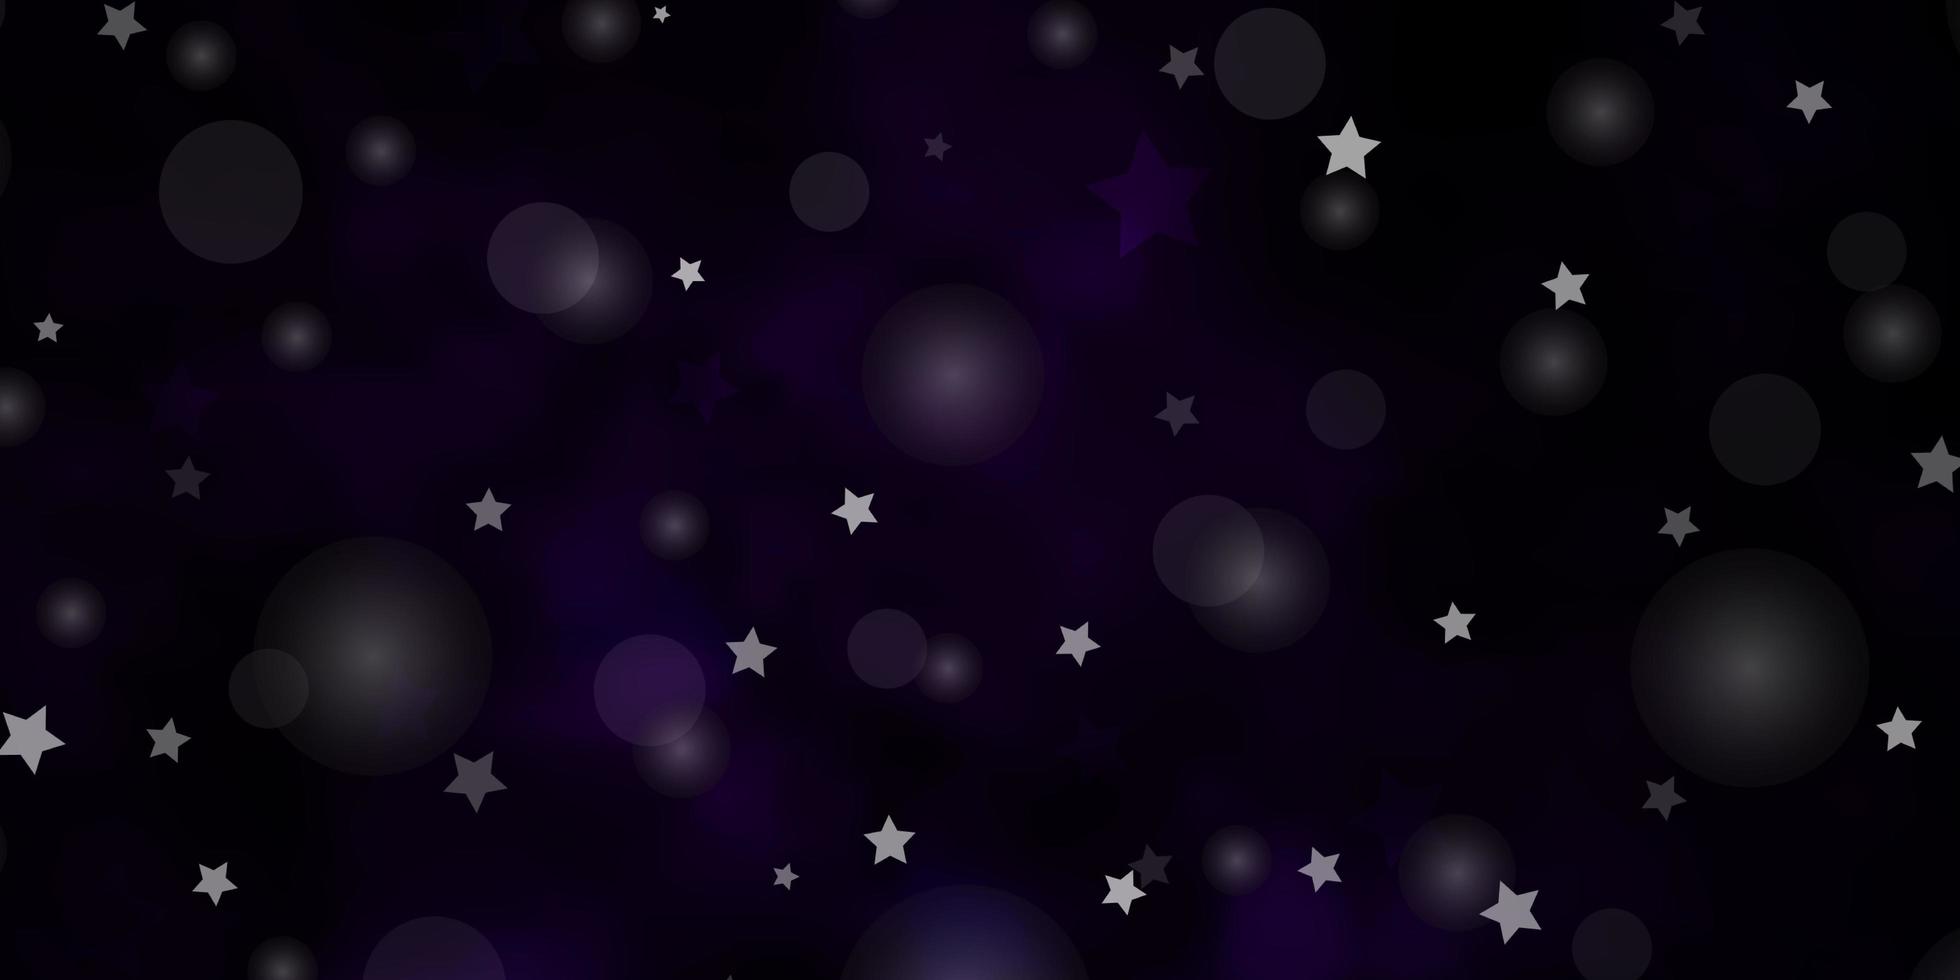 fond de vecteur violet foncé avec des cercles, des étoiles.